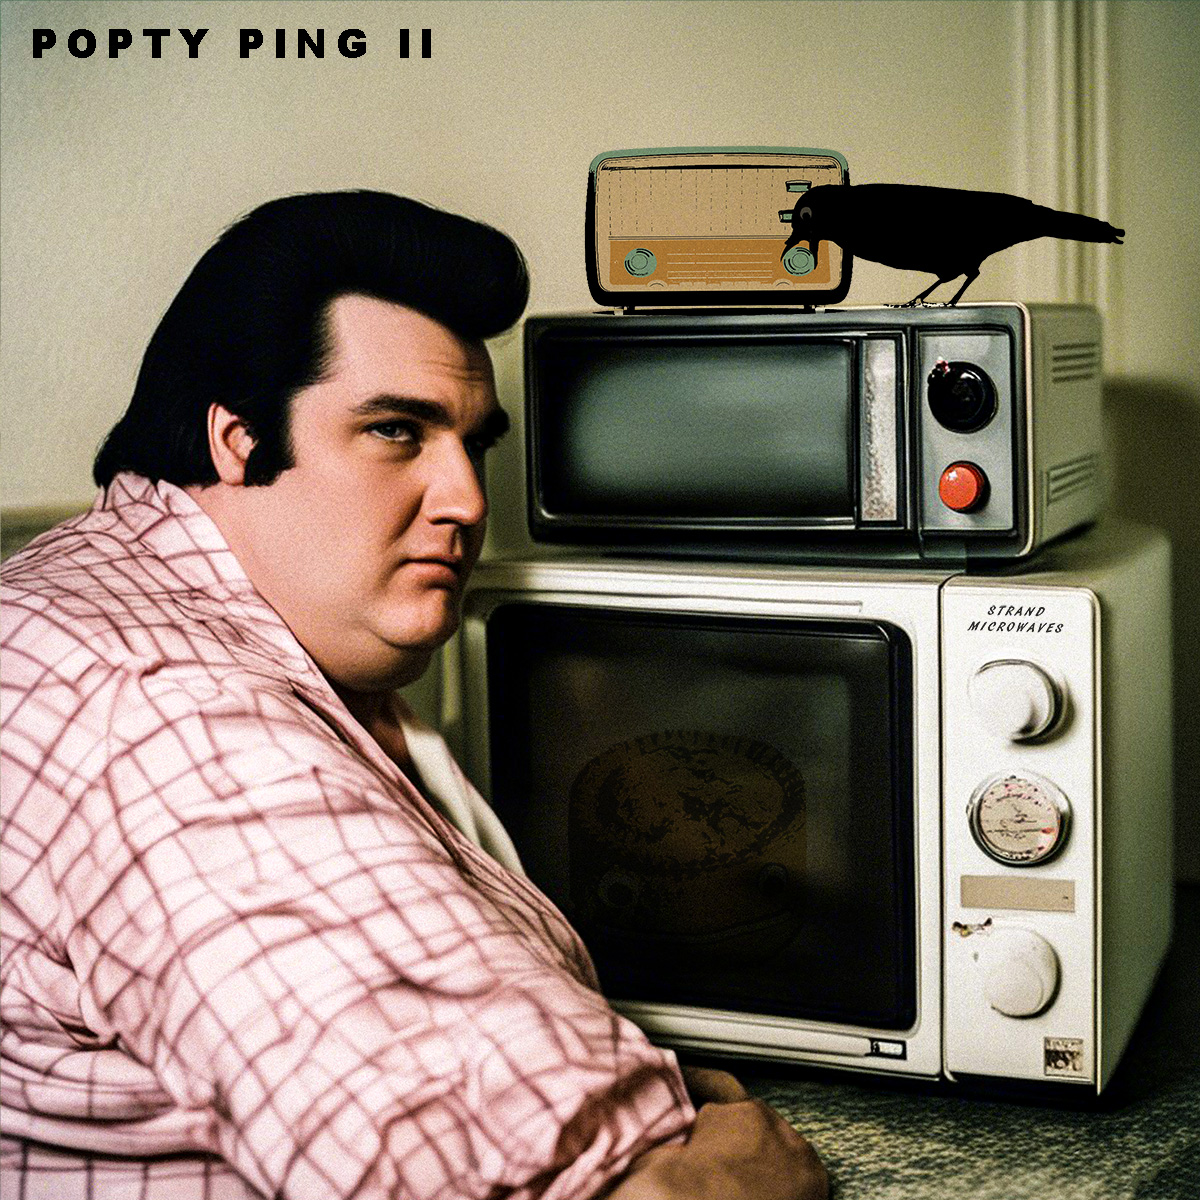 LISTEN: “Popty Ping II” by The Rusty Nutz